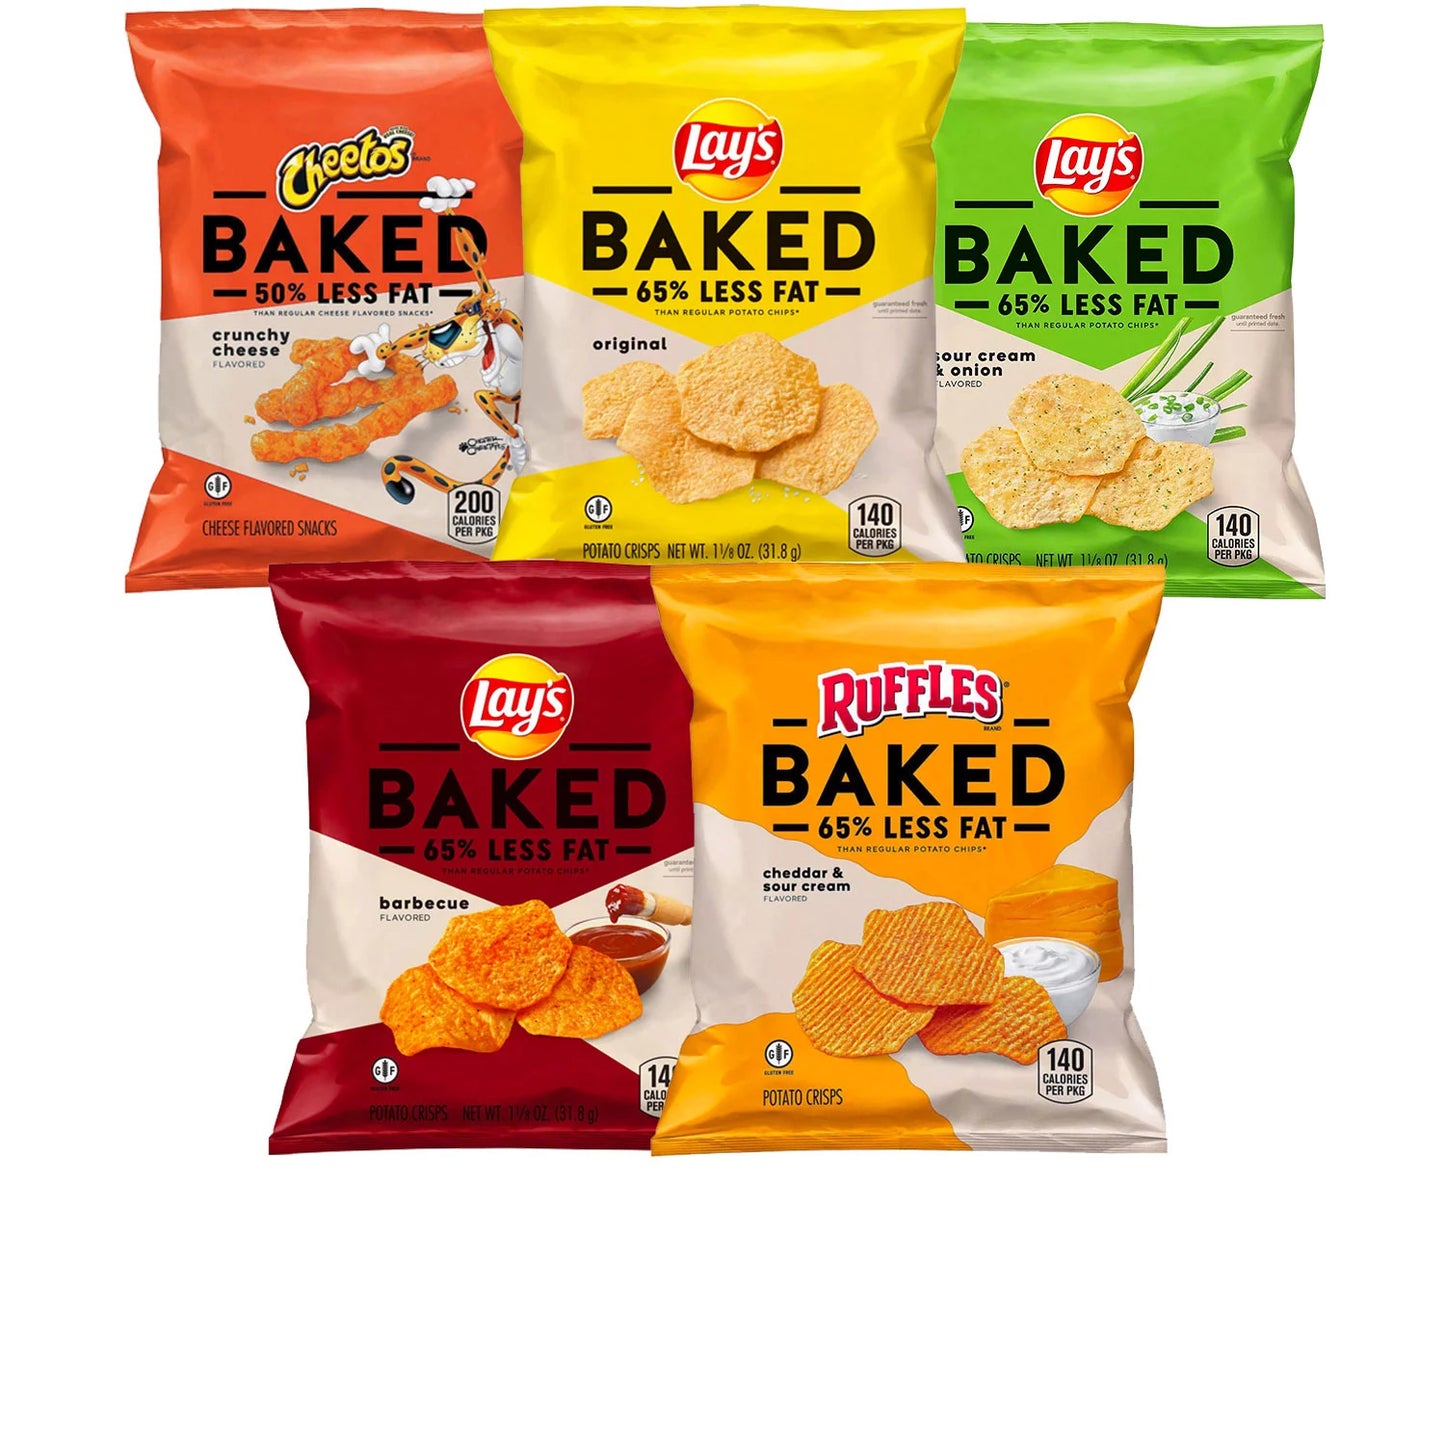 Frito-Lay Baked Mix Variety Pack (30 ct.)